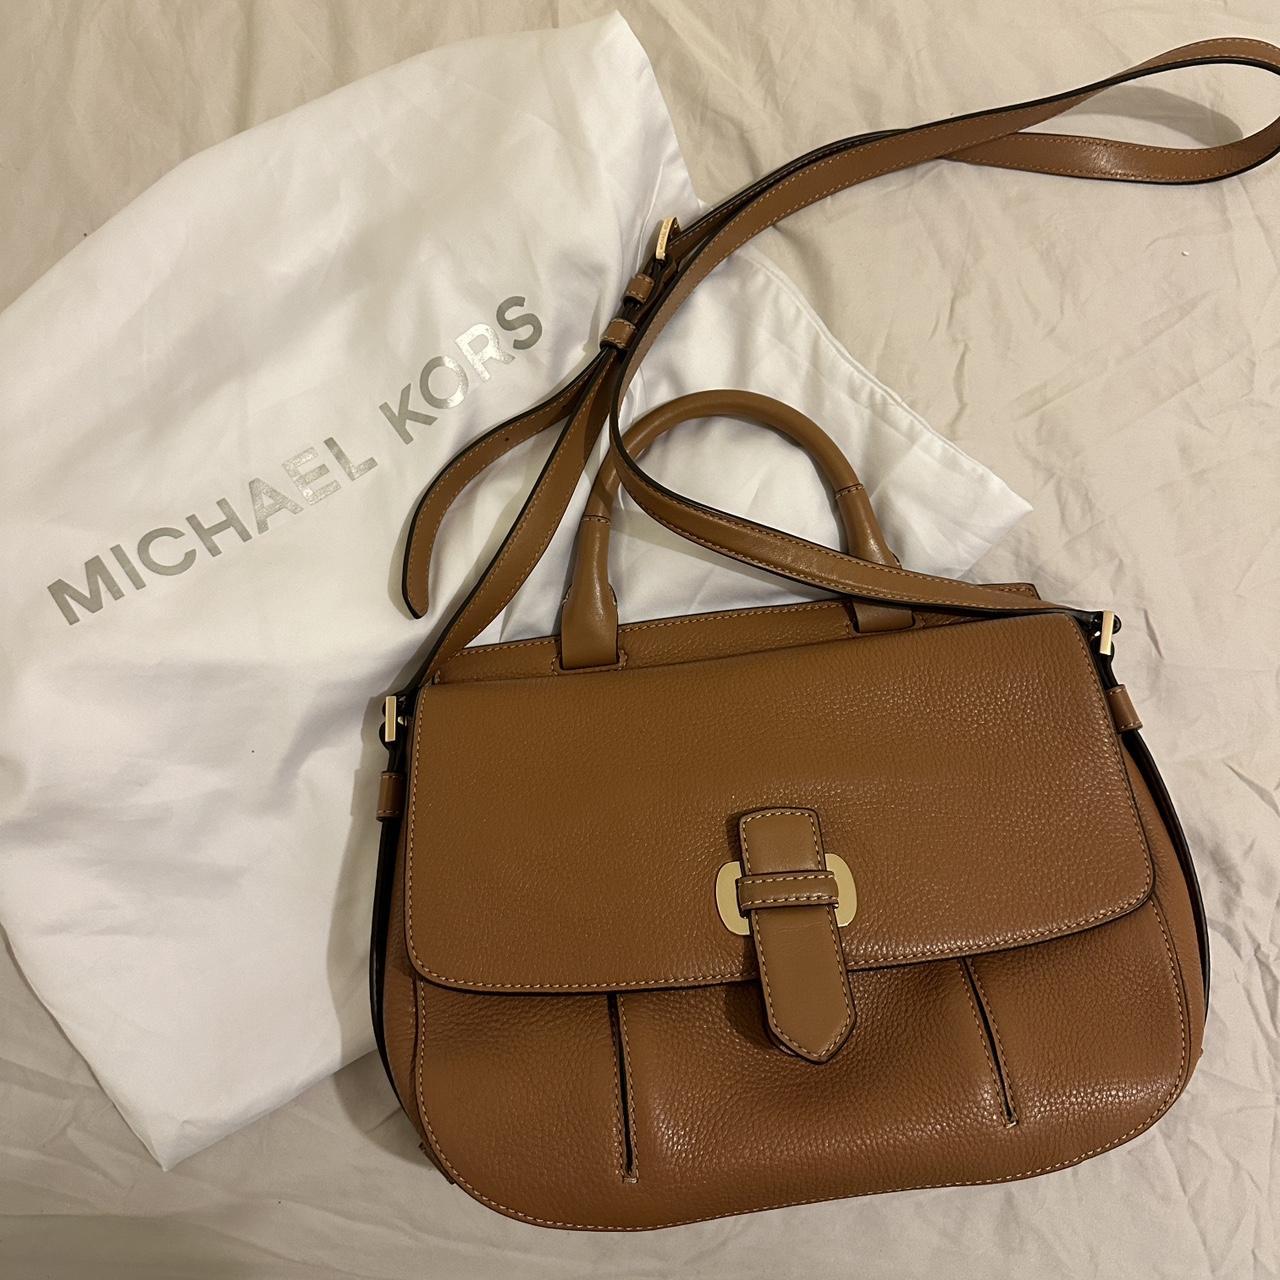 full leather Michael Kors bag top handle/crossbody bag - Depop